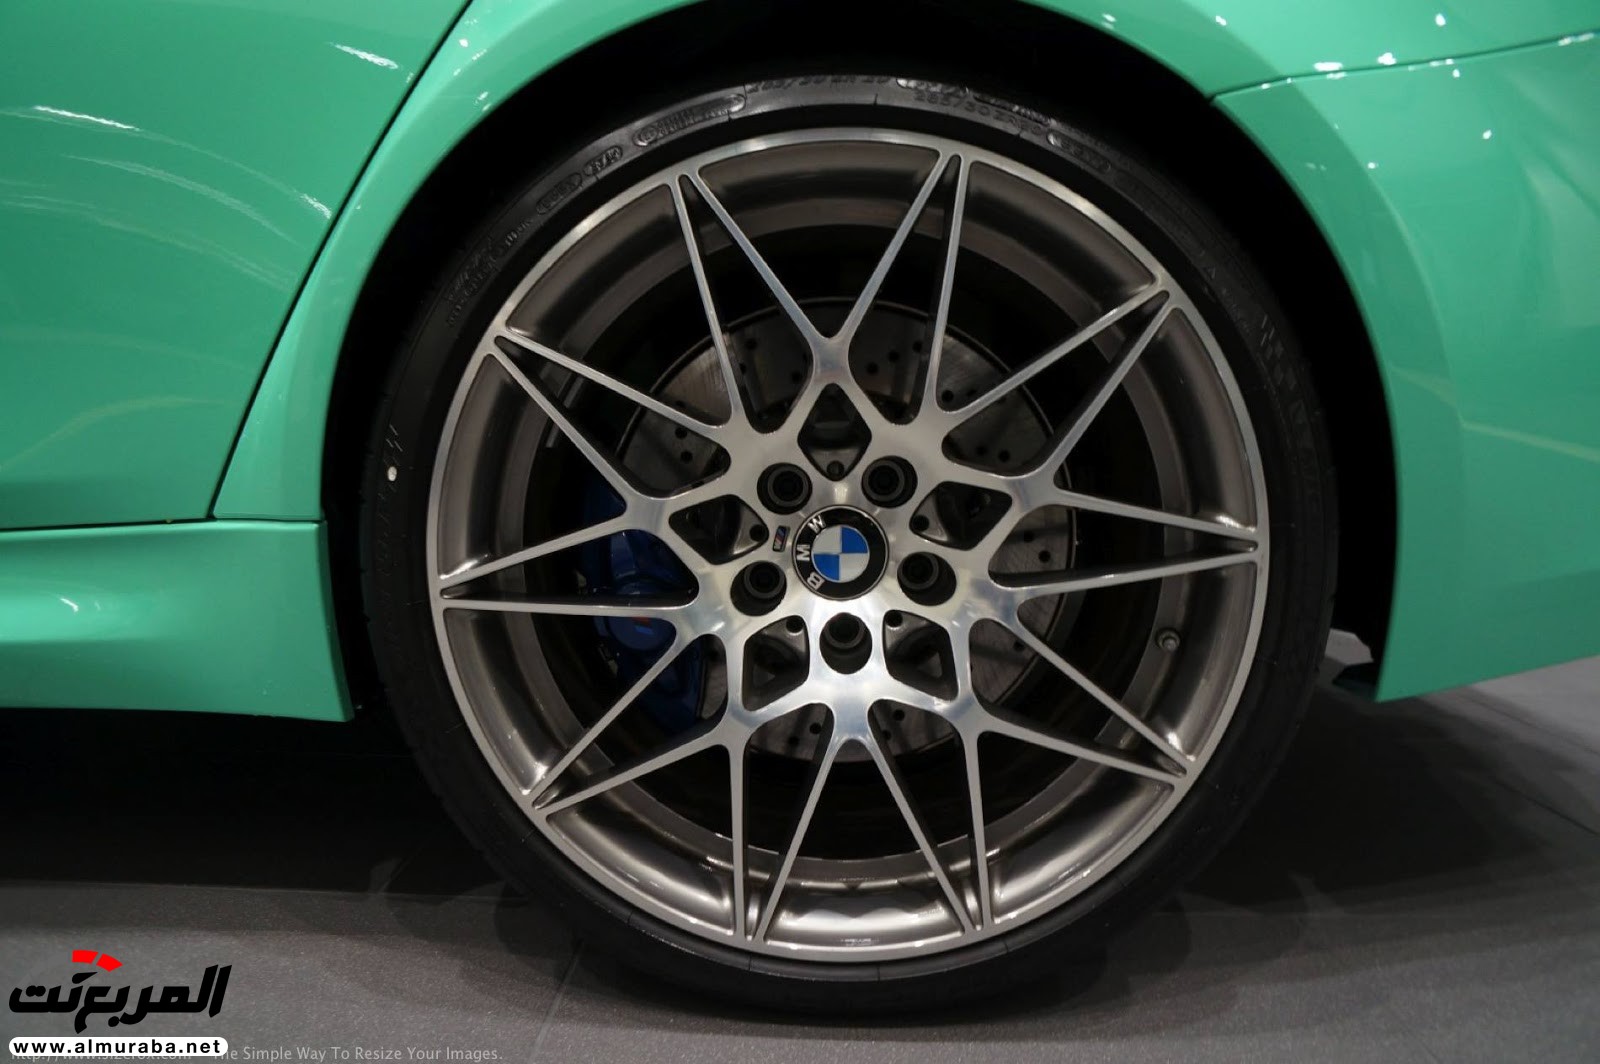 "بالصور" شاهد "بي إم دبليو" F80 M3 الخاصة بطلاء النعناع الأخضر BMW 87